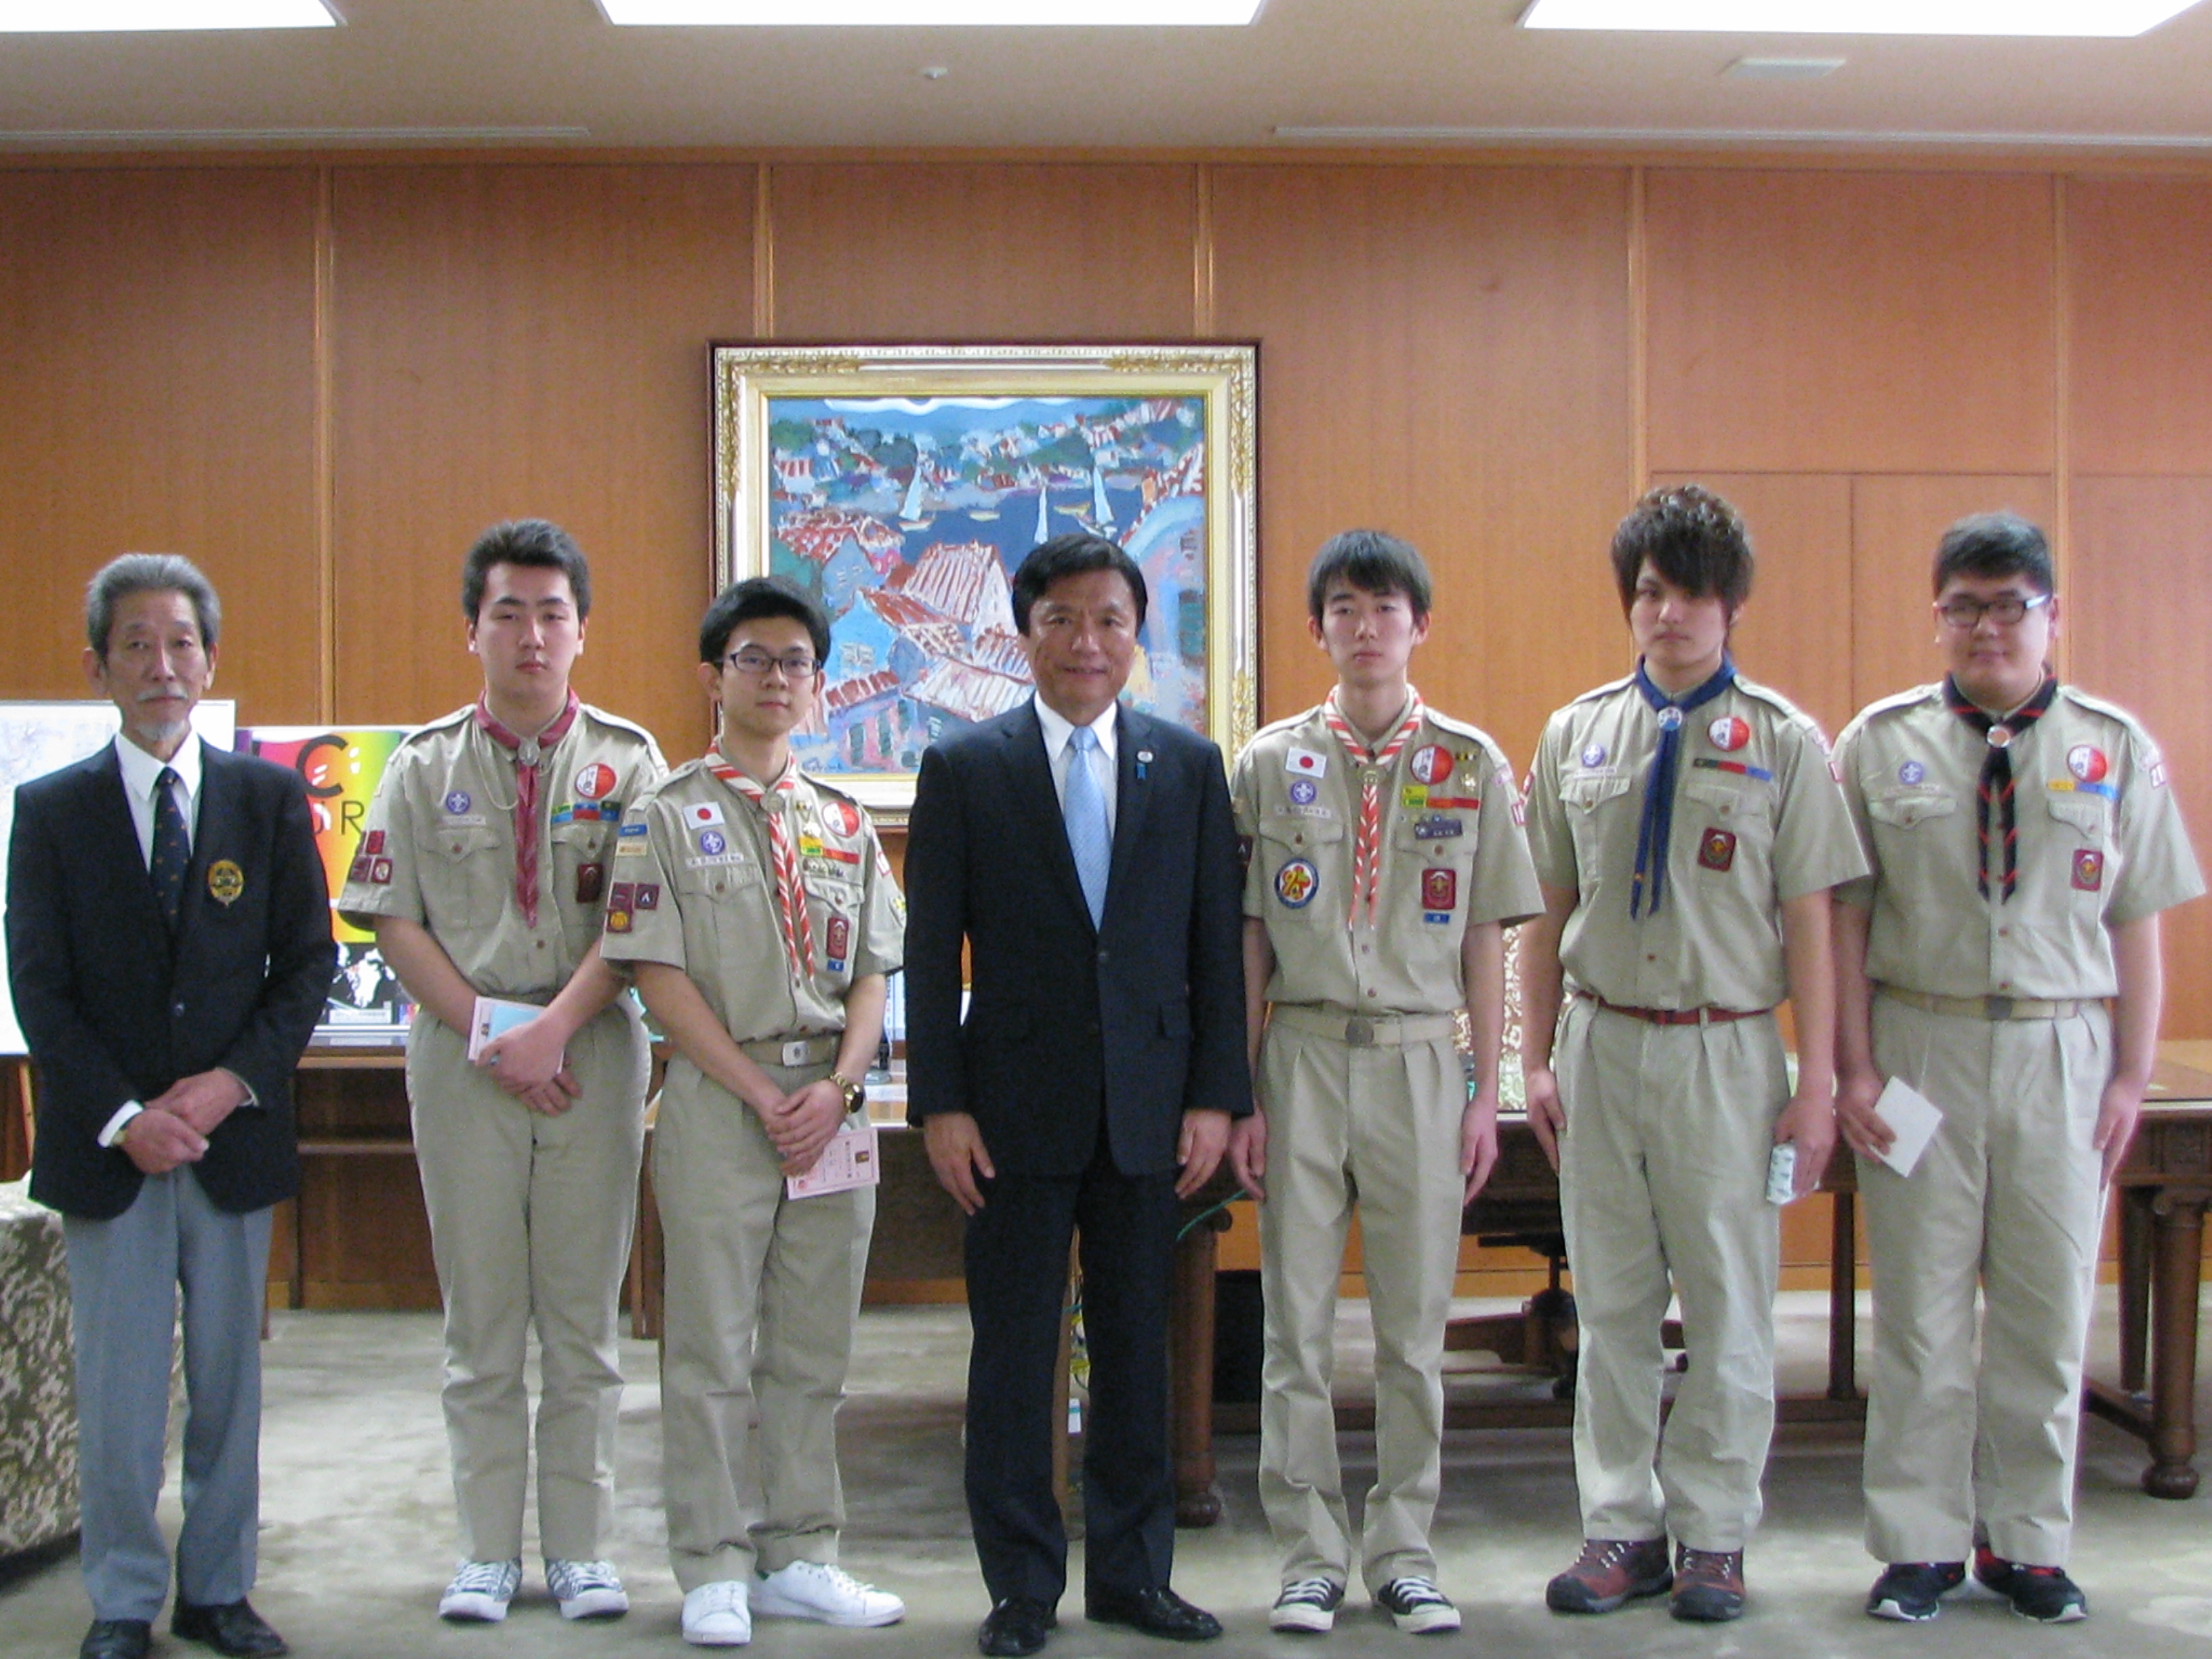 富士スカウトの連盟長表敬訪問が行われました 日本ボーイスカウト 福岡県連盟